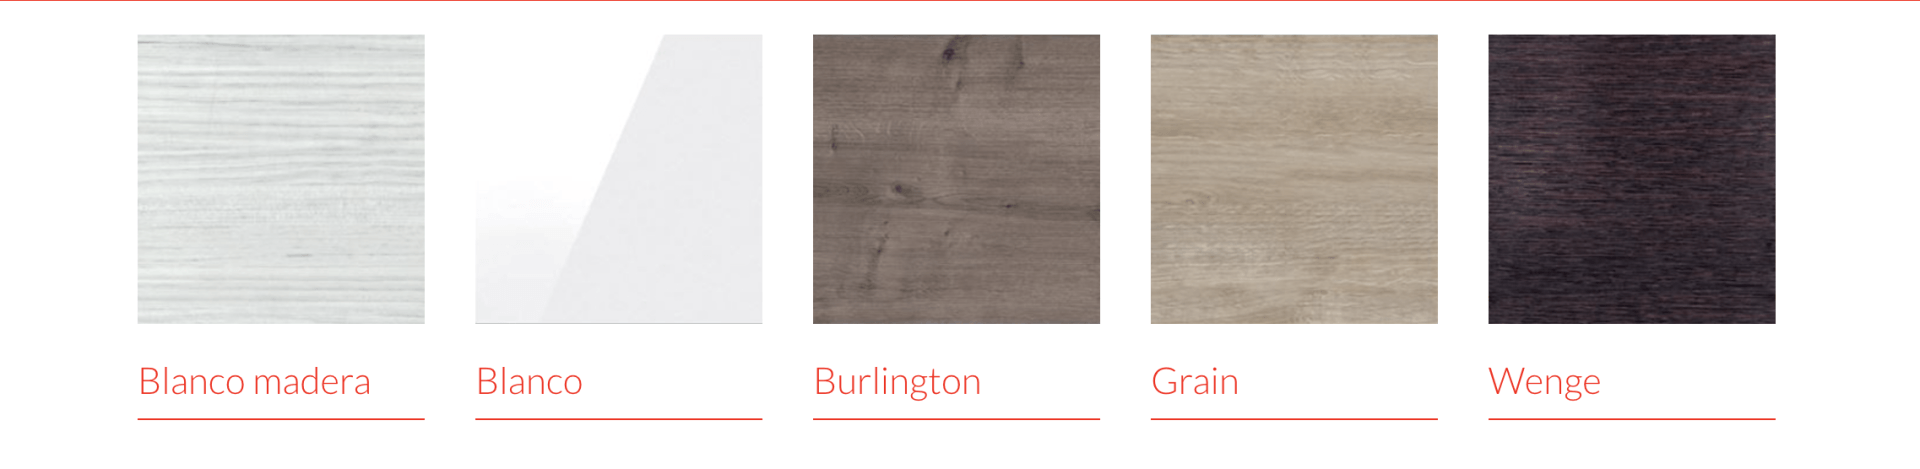 Una imagen de cuatro tipos diferentes de madera.